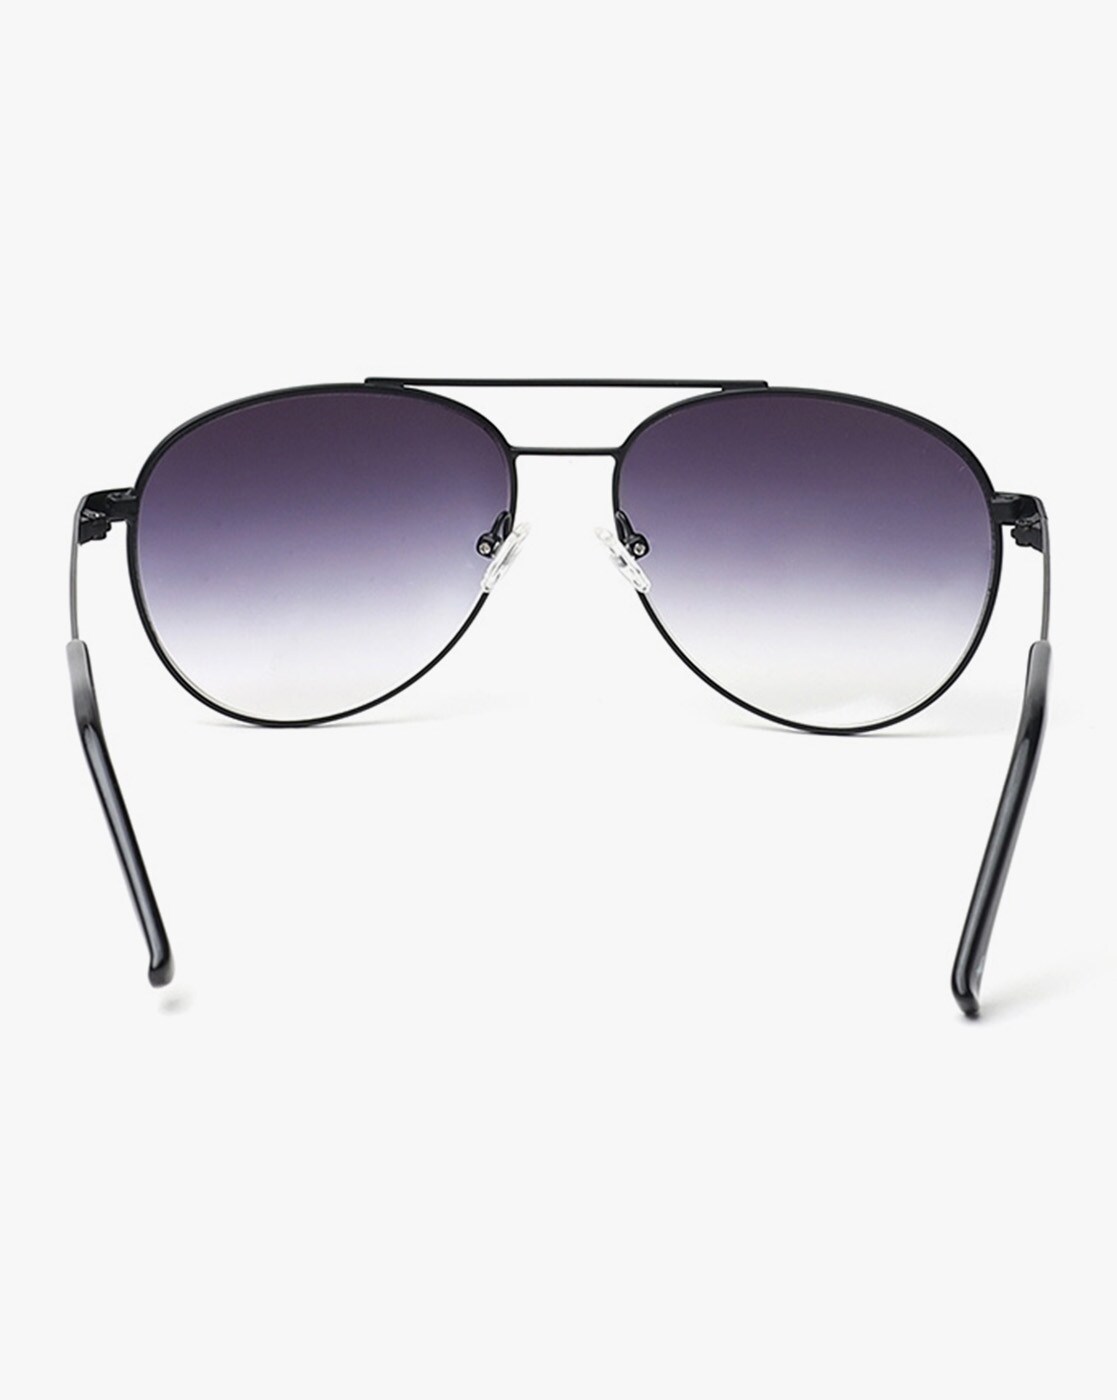 Buy Black Sunglasses for Men by FASTRACK Online